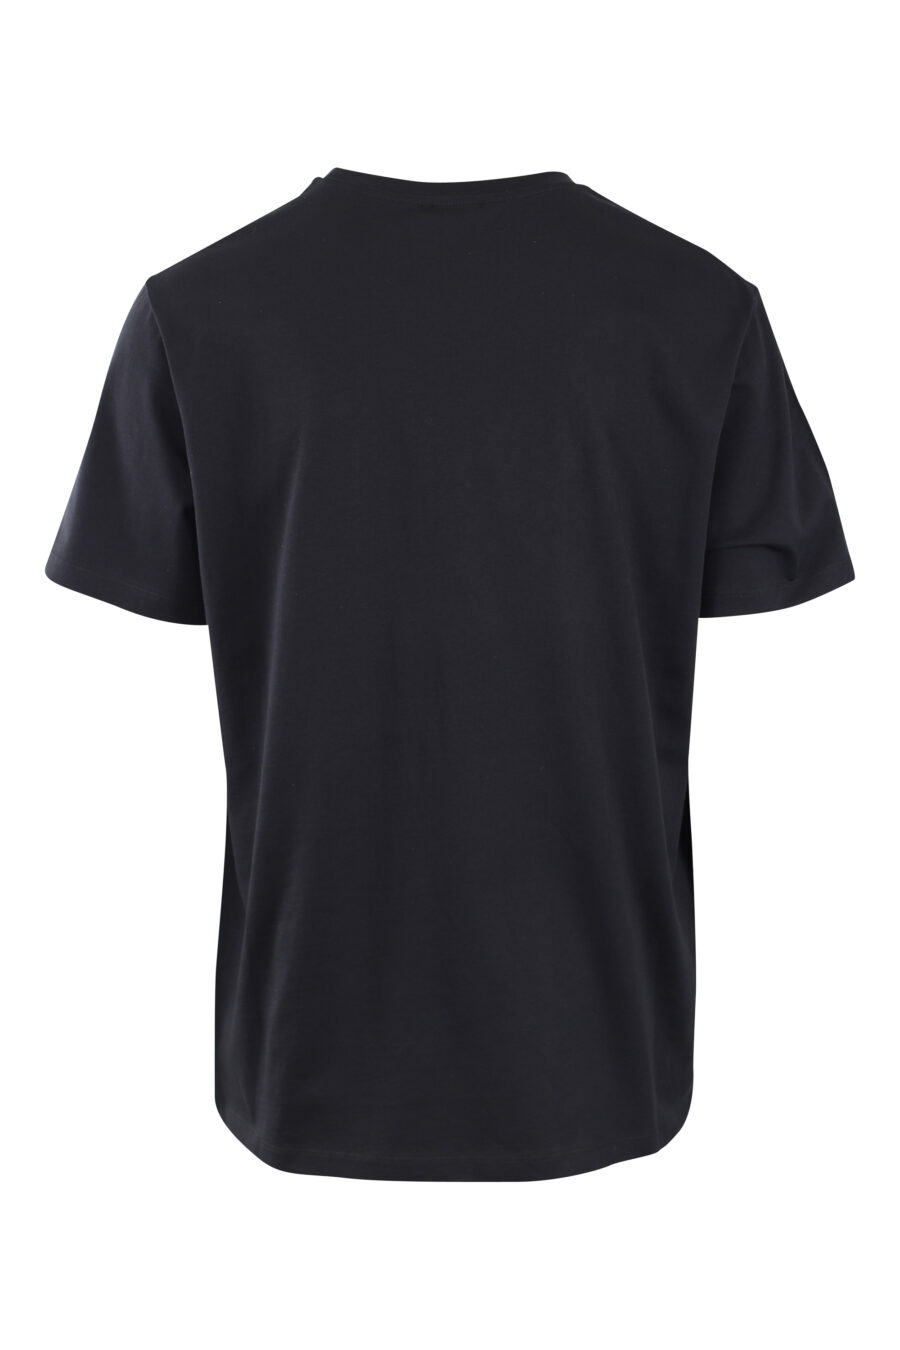 Camiseta negra con maxilogo en terciopelo negro con plateado - IMG 2581